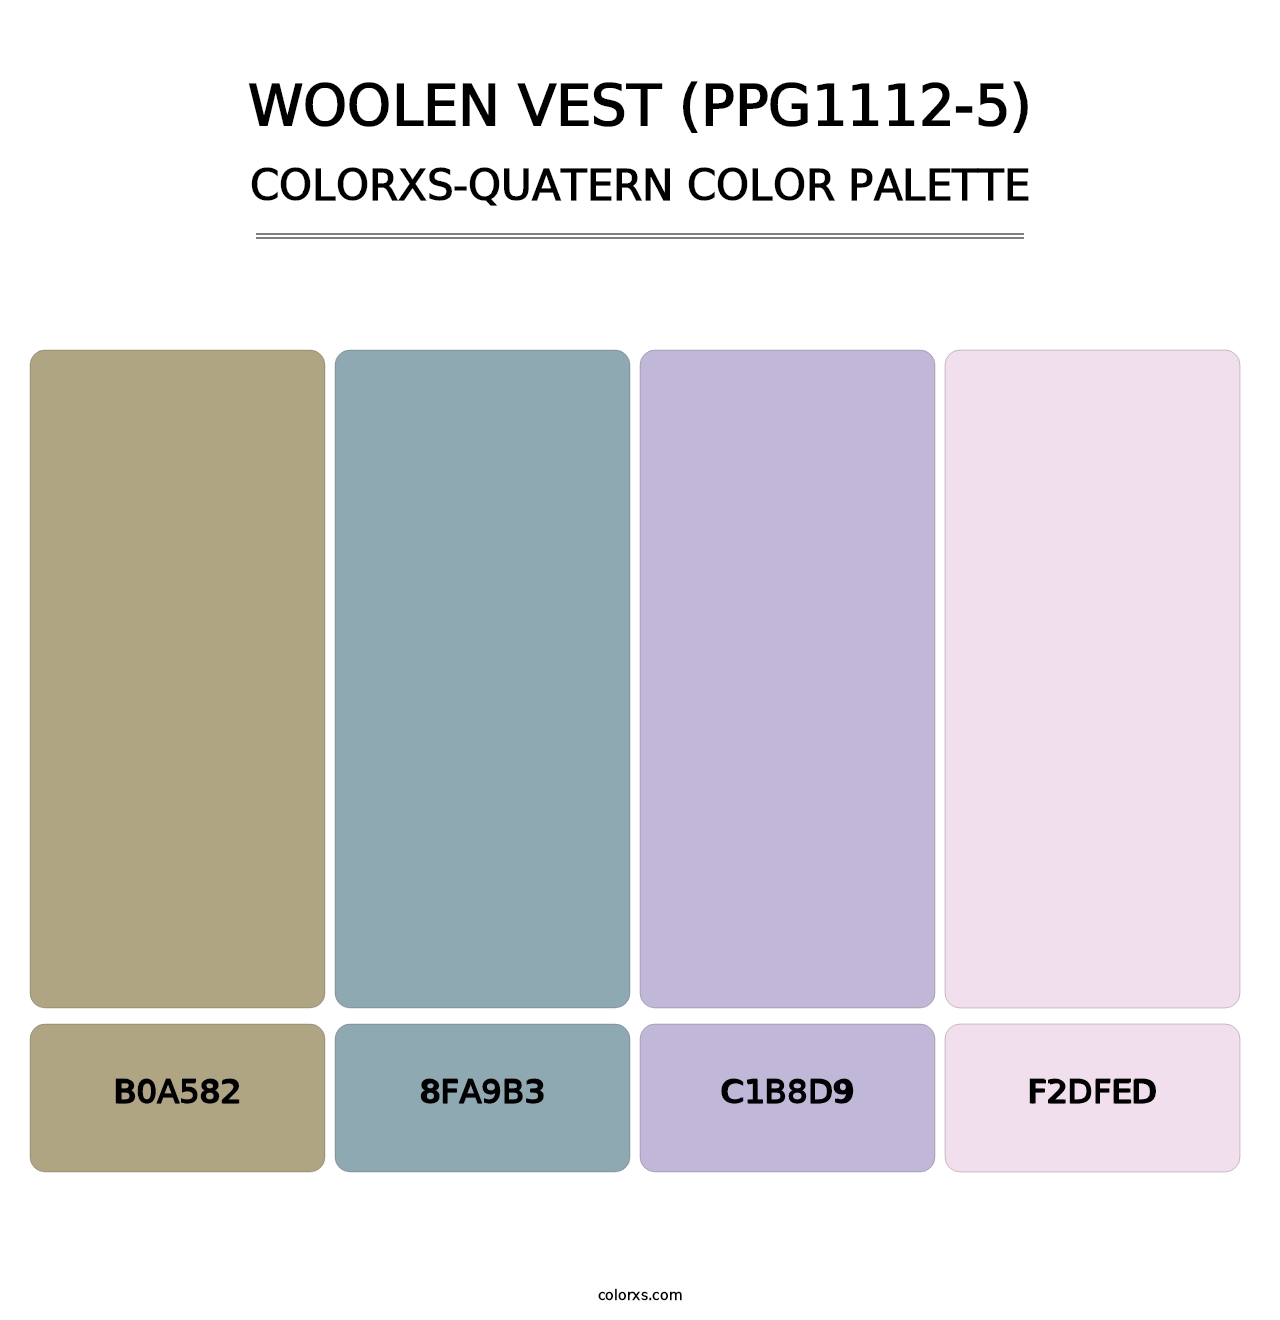 Woolen Vest (PPG1112-5) - Colorxs Quatern Palette